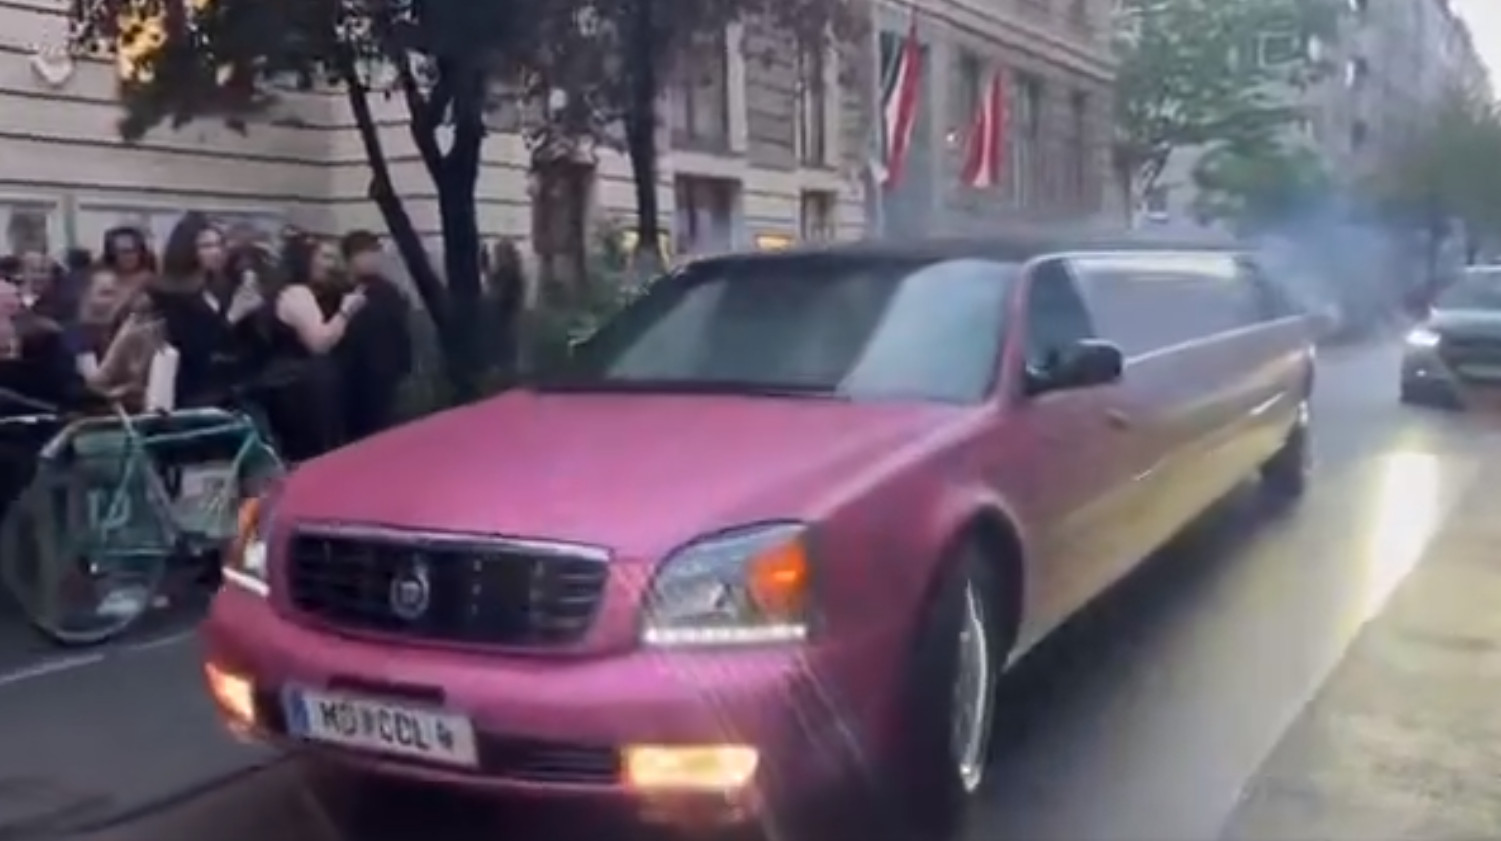 Skolim powitany jak król we Wiedniu! Różowa limuzyna, tłumy fanek! Tak nie witają nawet Zenona Martyniuka! Zobaczcie nagranie!